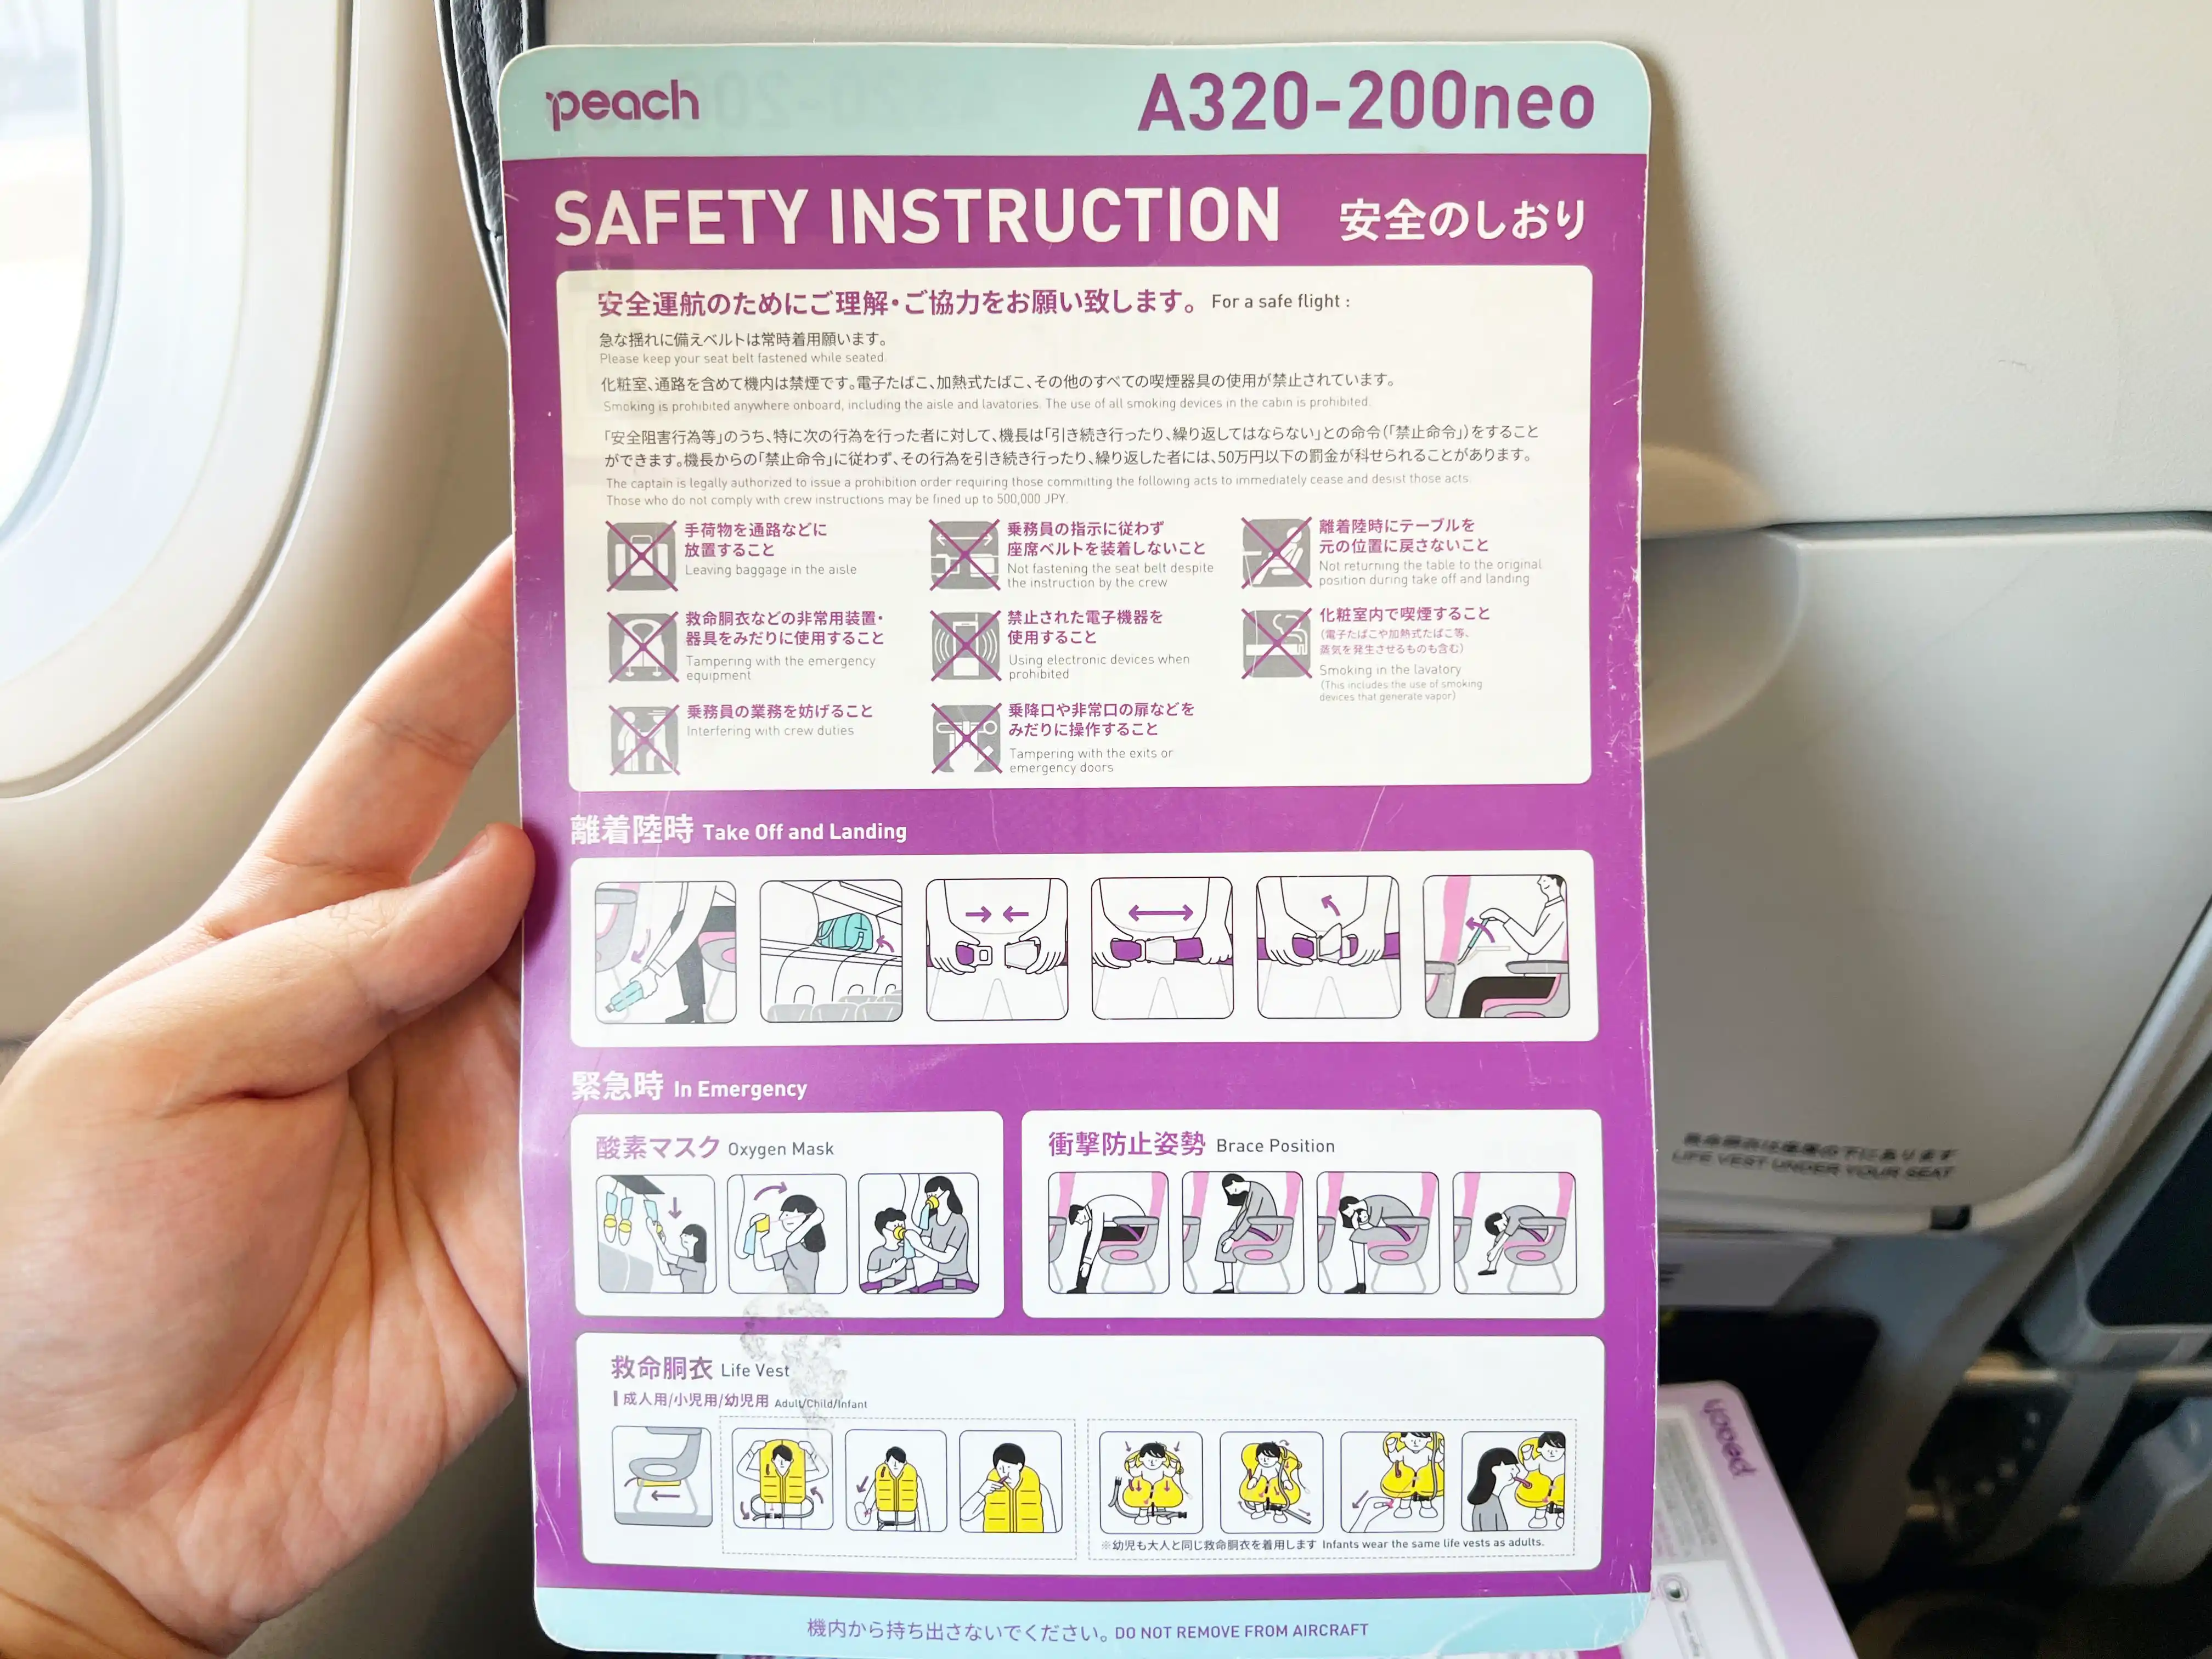 乐桃航空飞机座椅口袋内的安全手册正面。